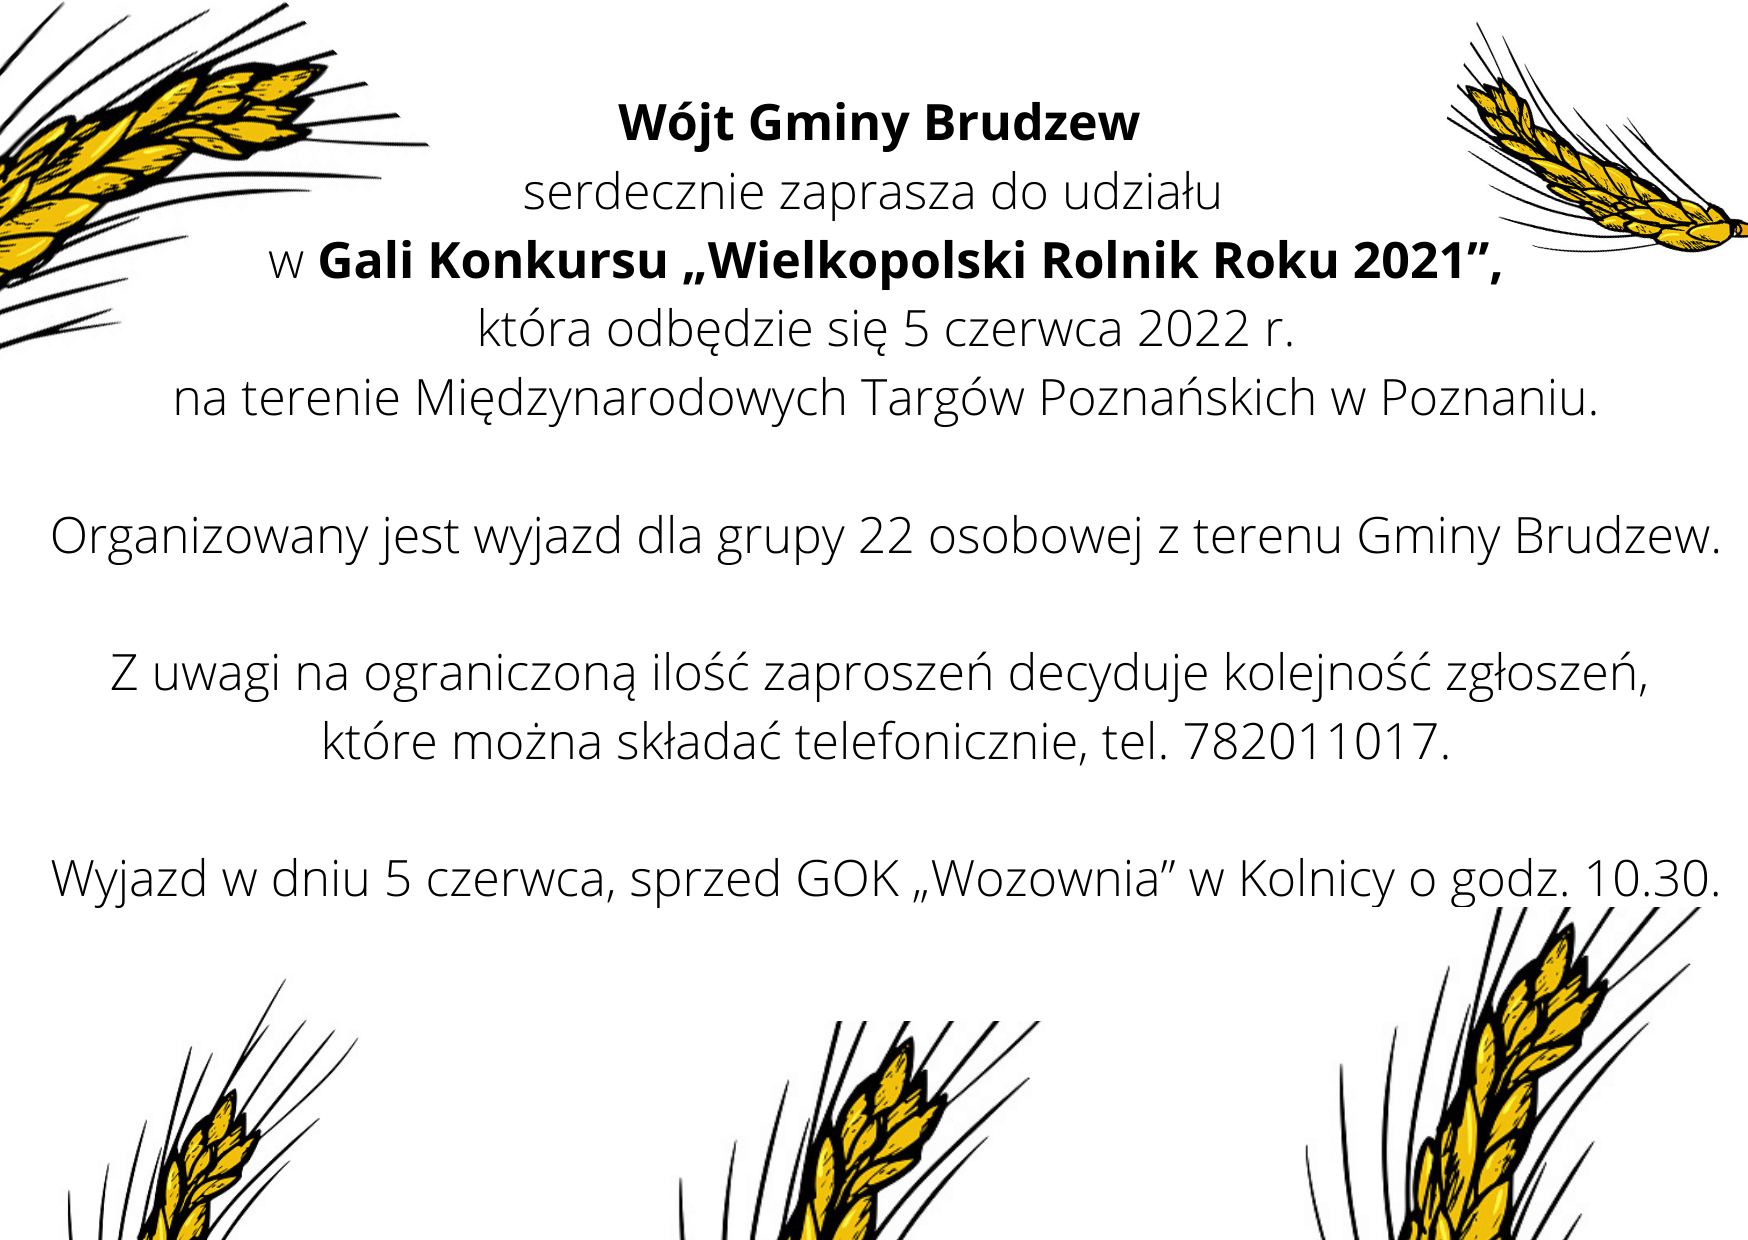 Wielkopolski Rolnik Roku